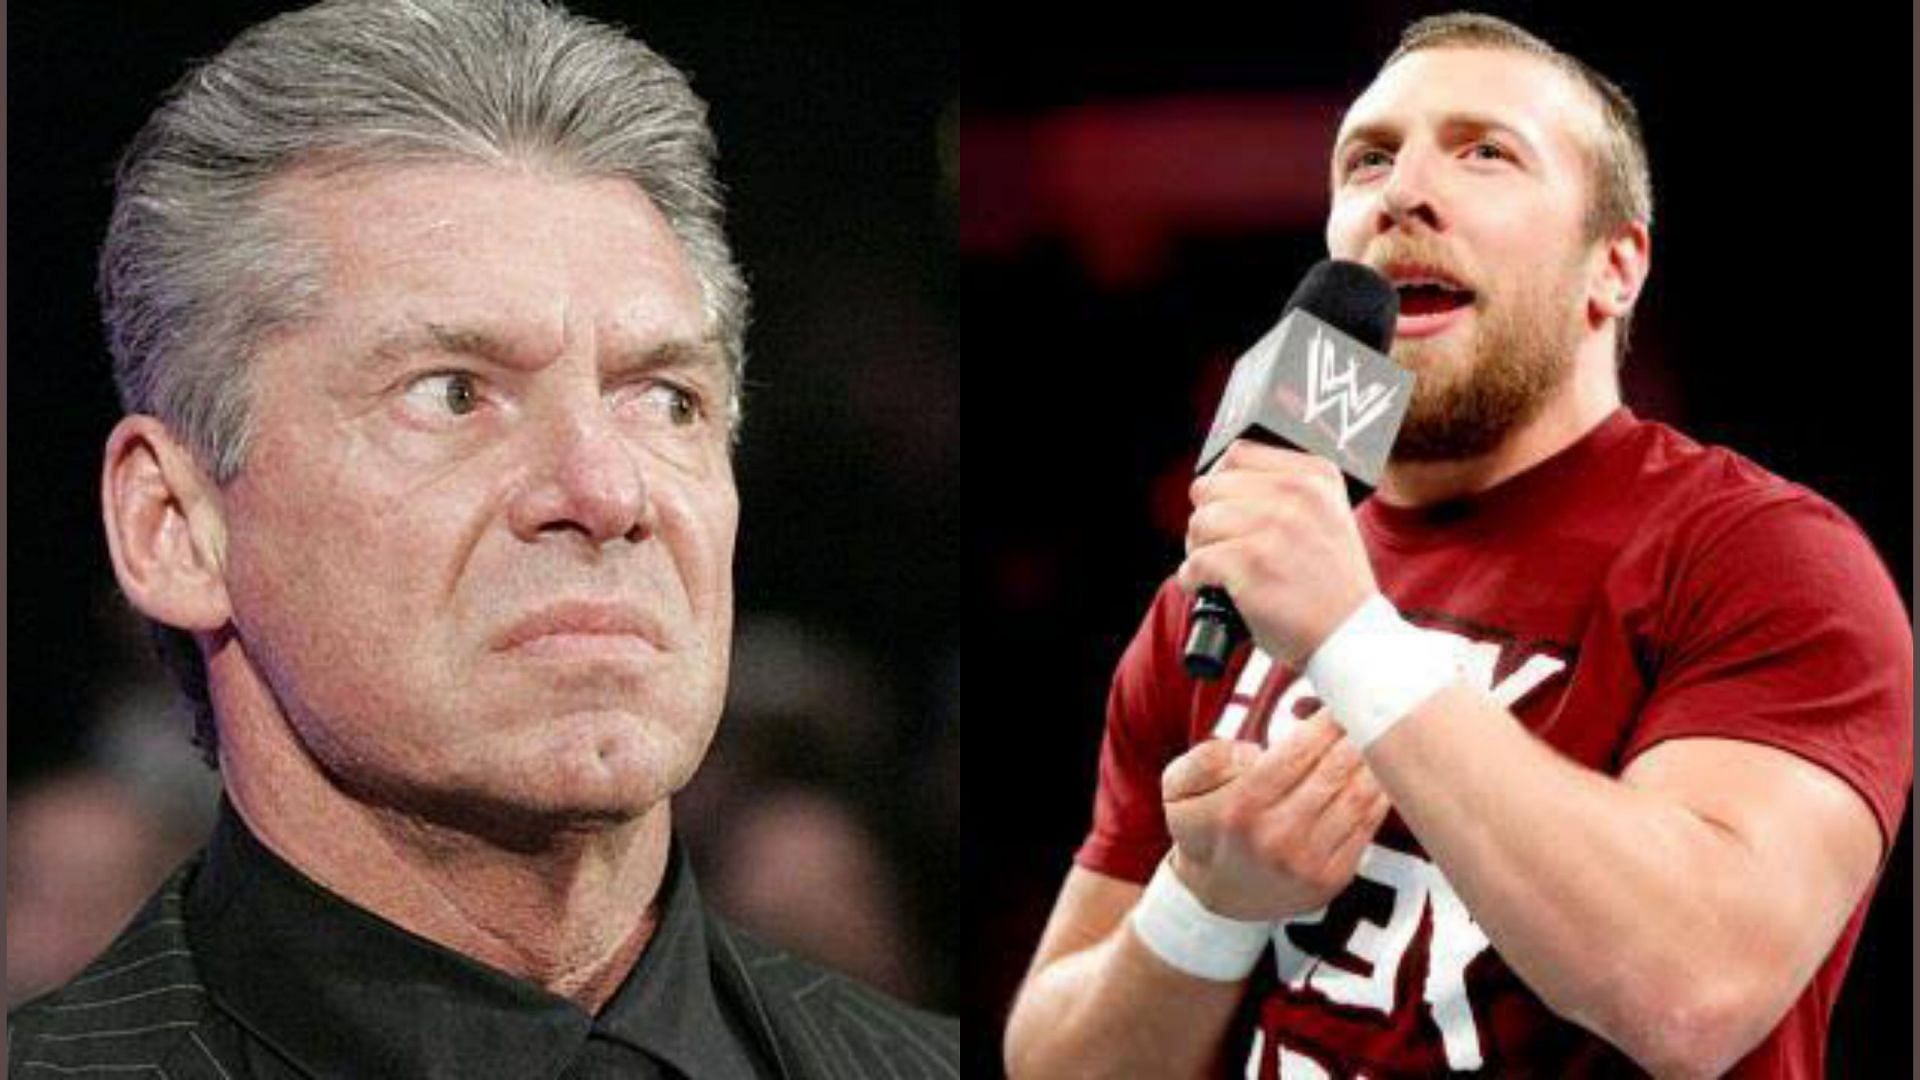 Vince McMahon (L) and Daniel Bryan (R).